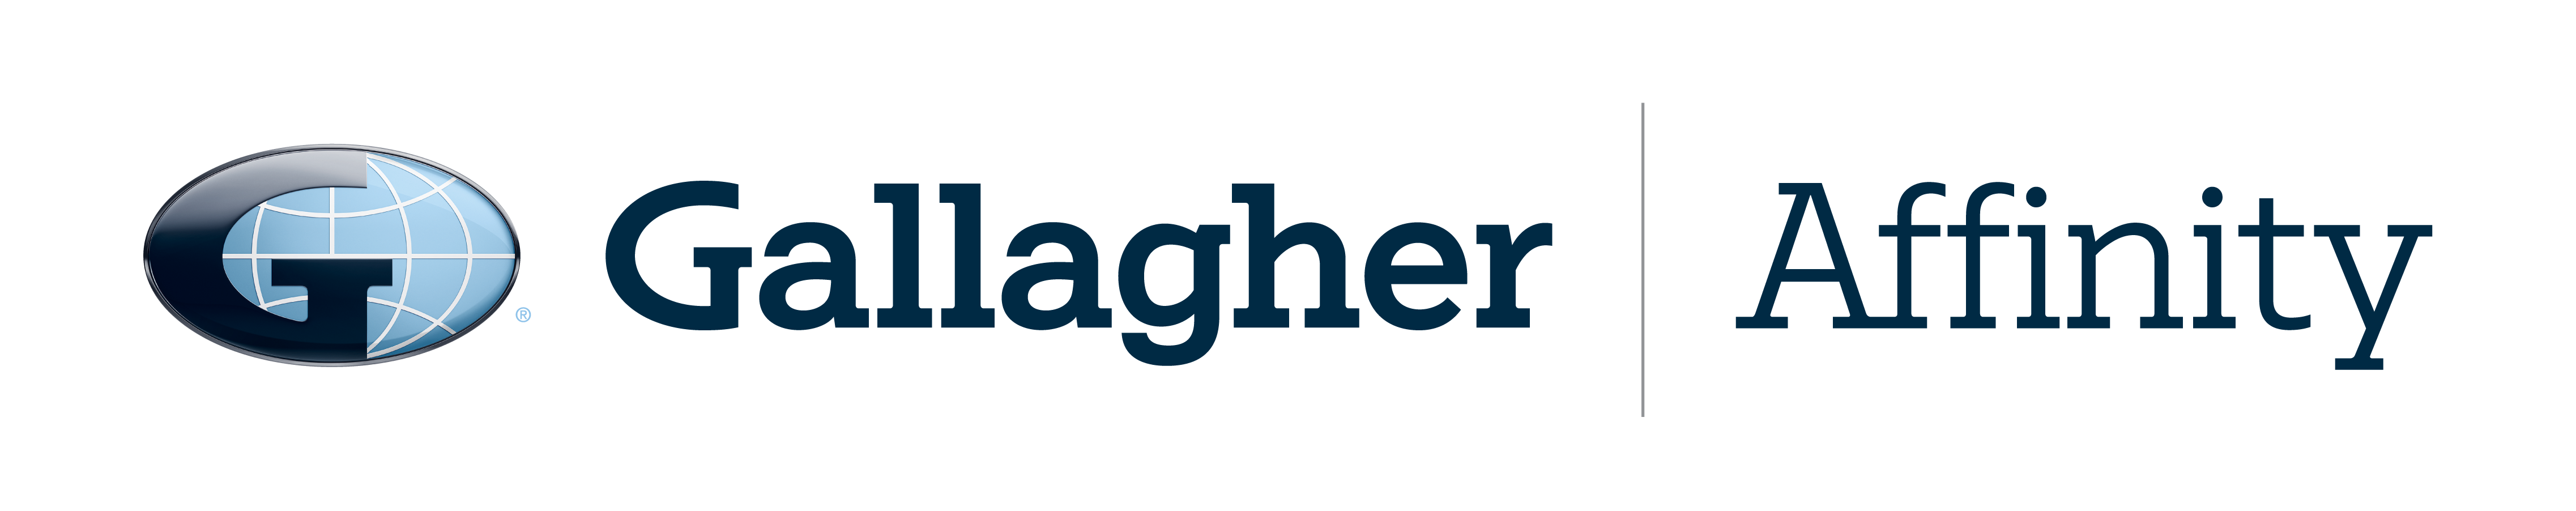 Gallagher Affinity logo